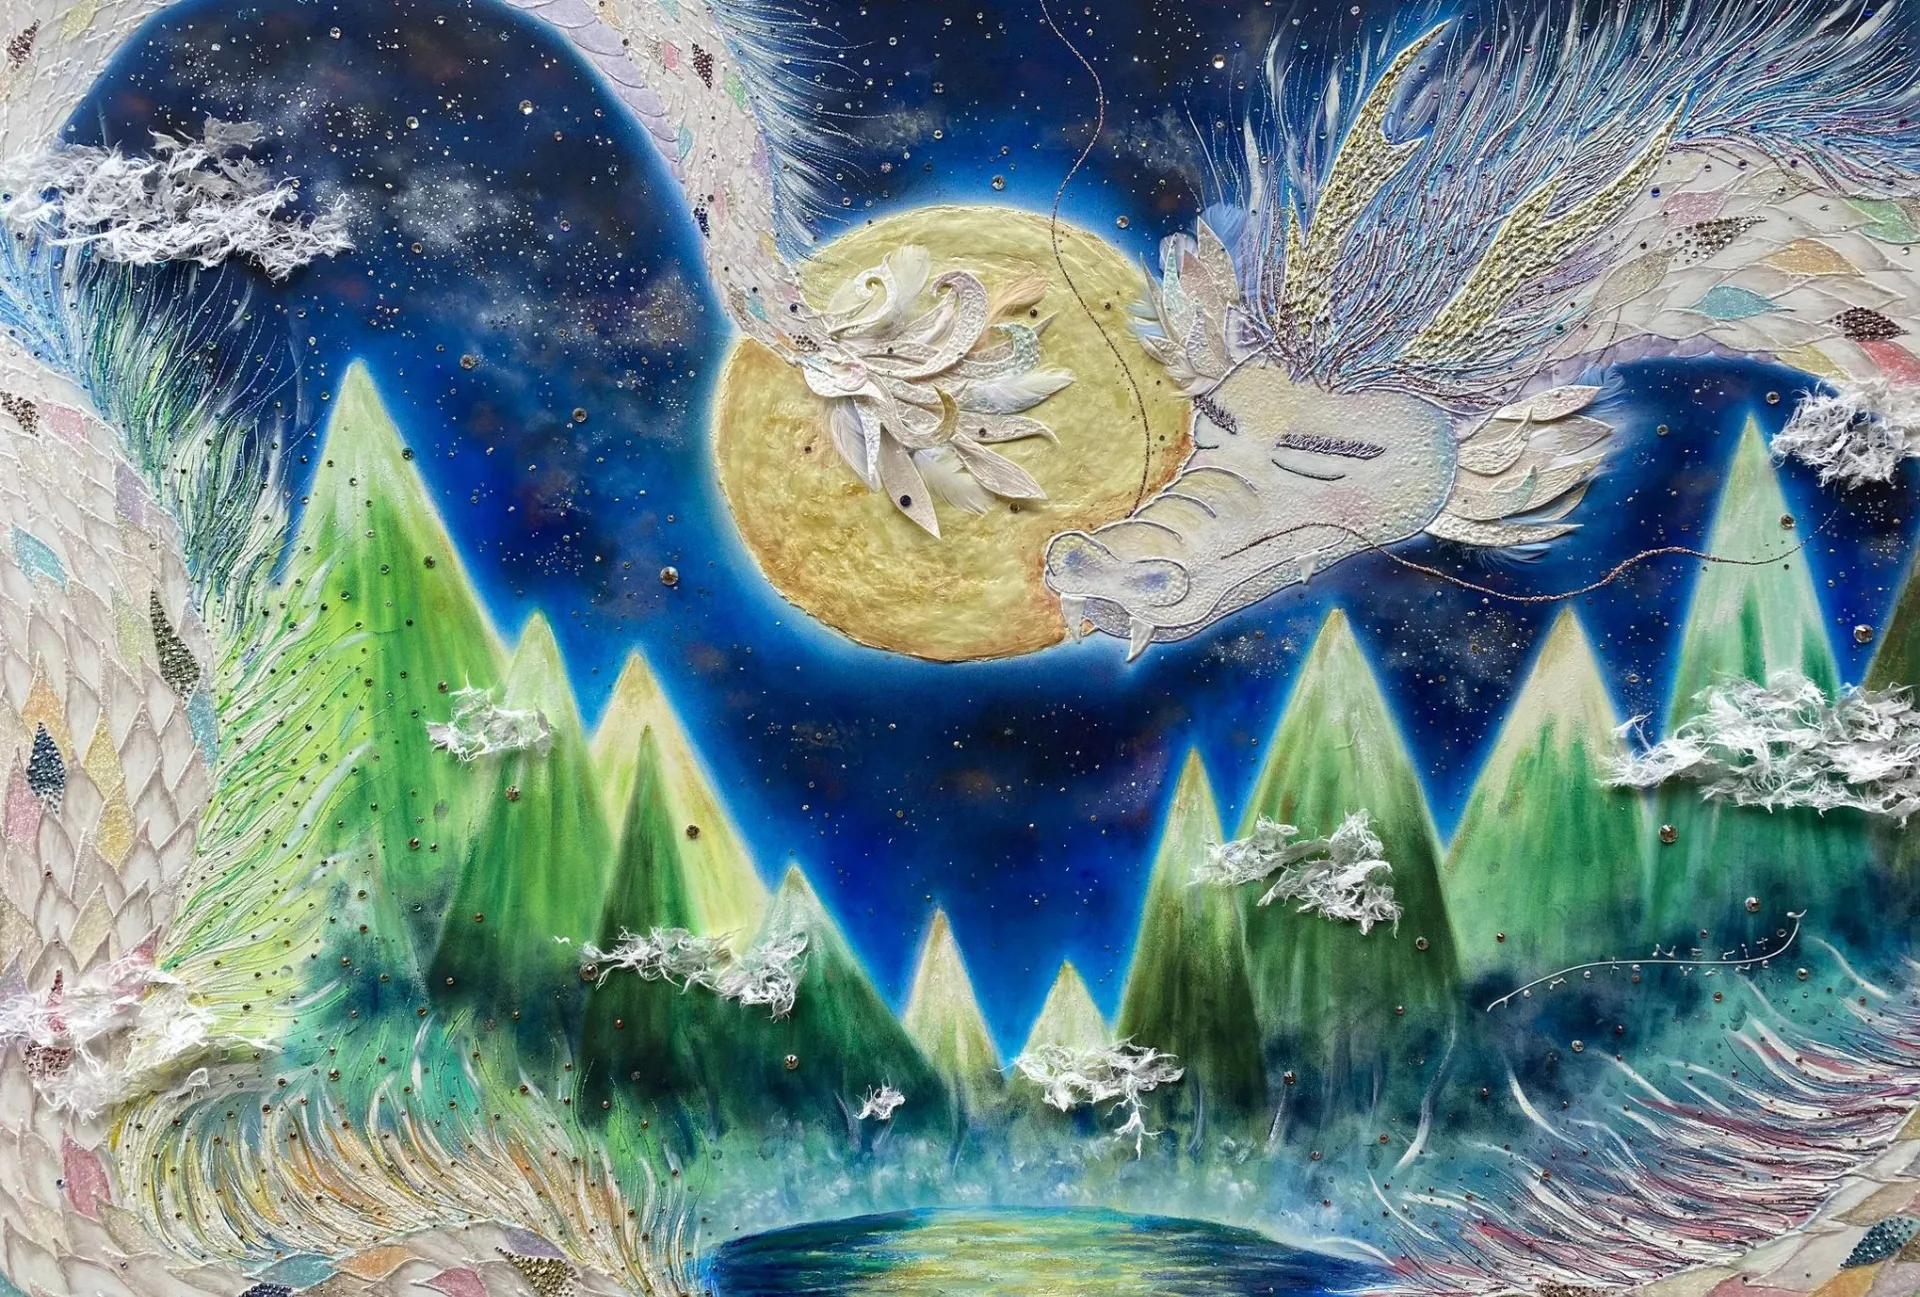 【龍絵画】龍神という村で龍を描くアーティスト